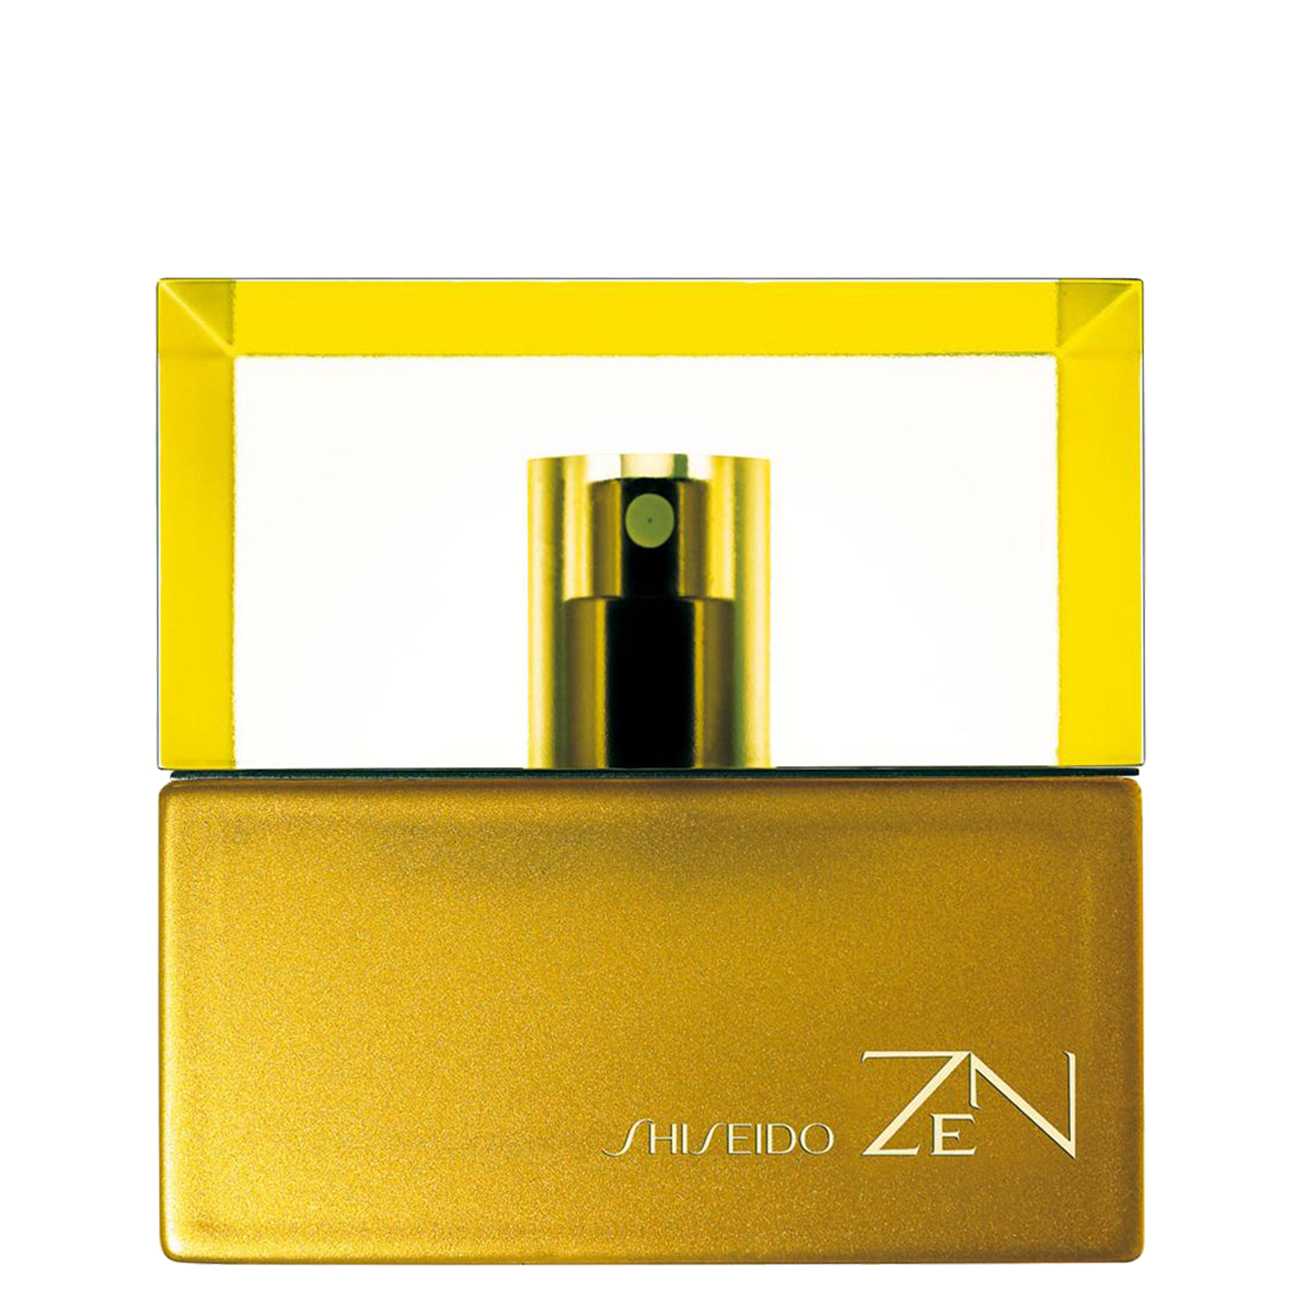 Apa de Parfum Shiseido ZEN 100ml cu comanda online